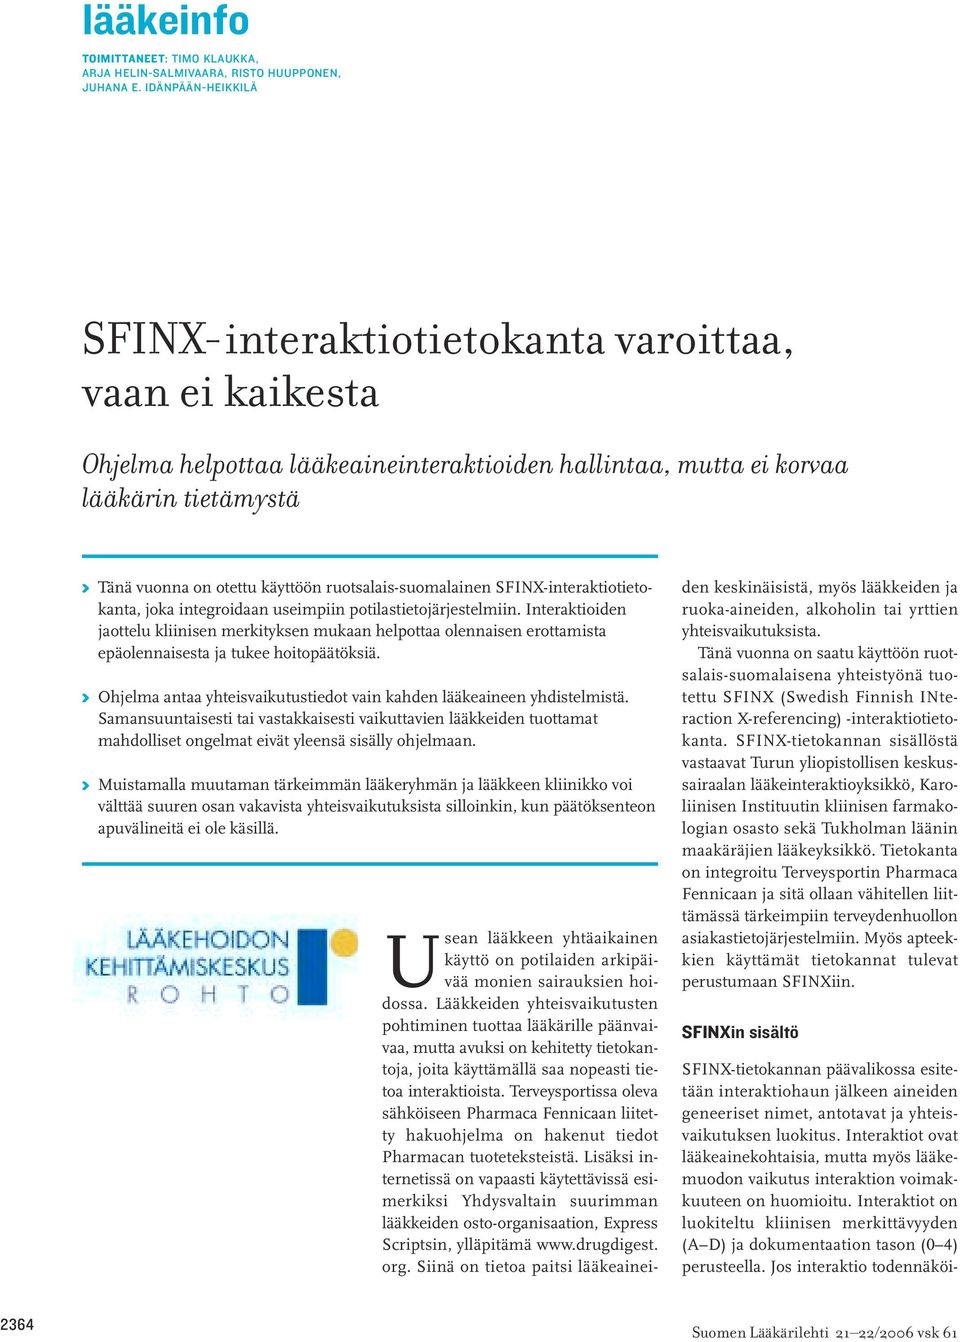 ruotsalais-suomalainen SFINX-interaktiotietokanta, joka integroidaan useimpiin potilastietojärjestelmiin.